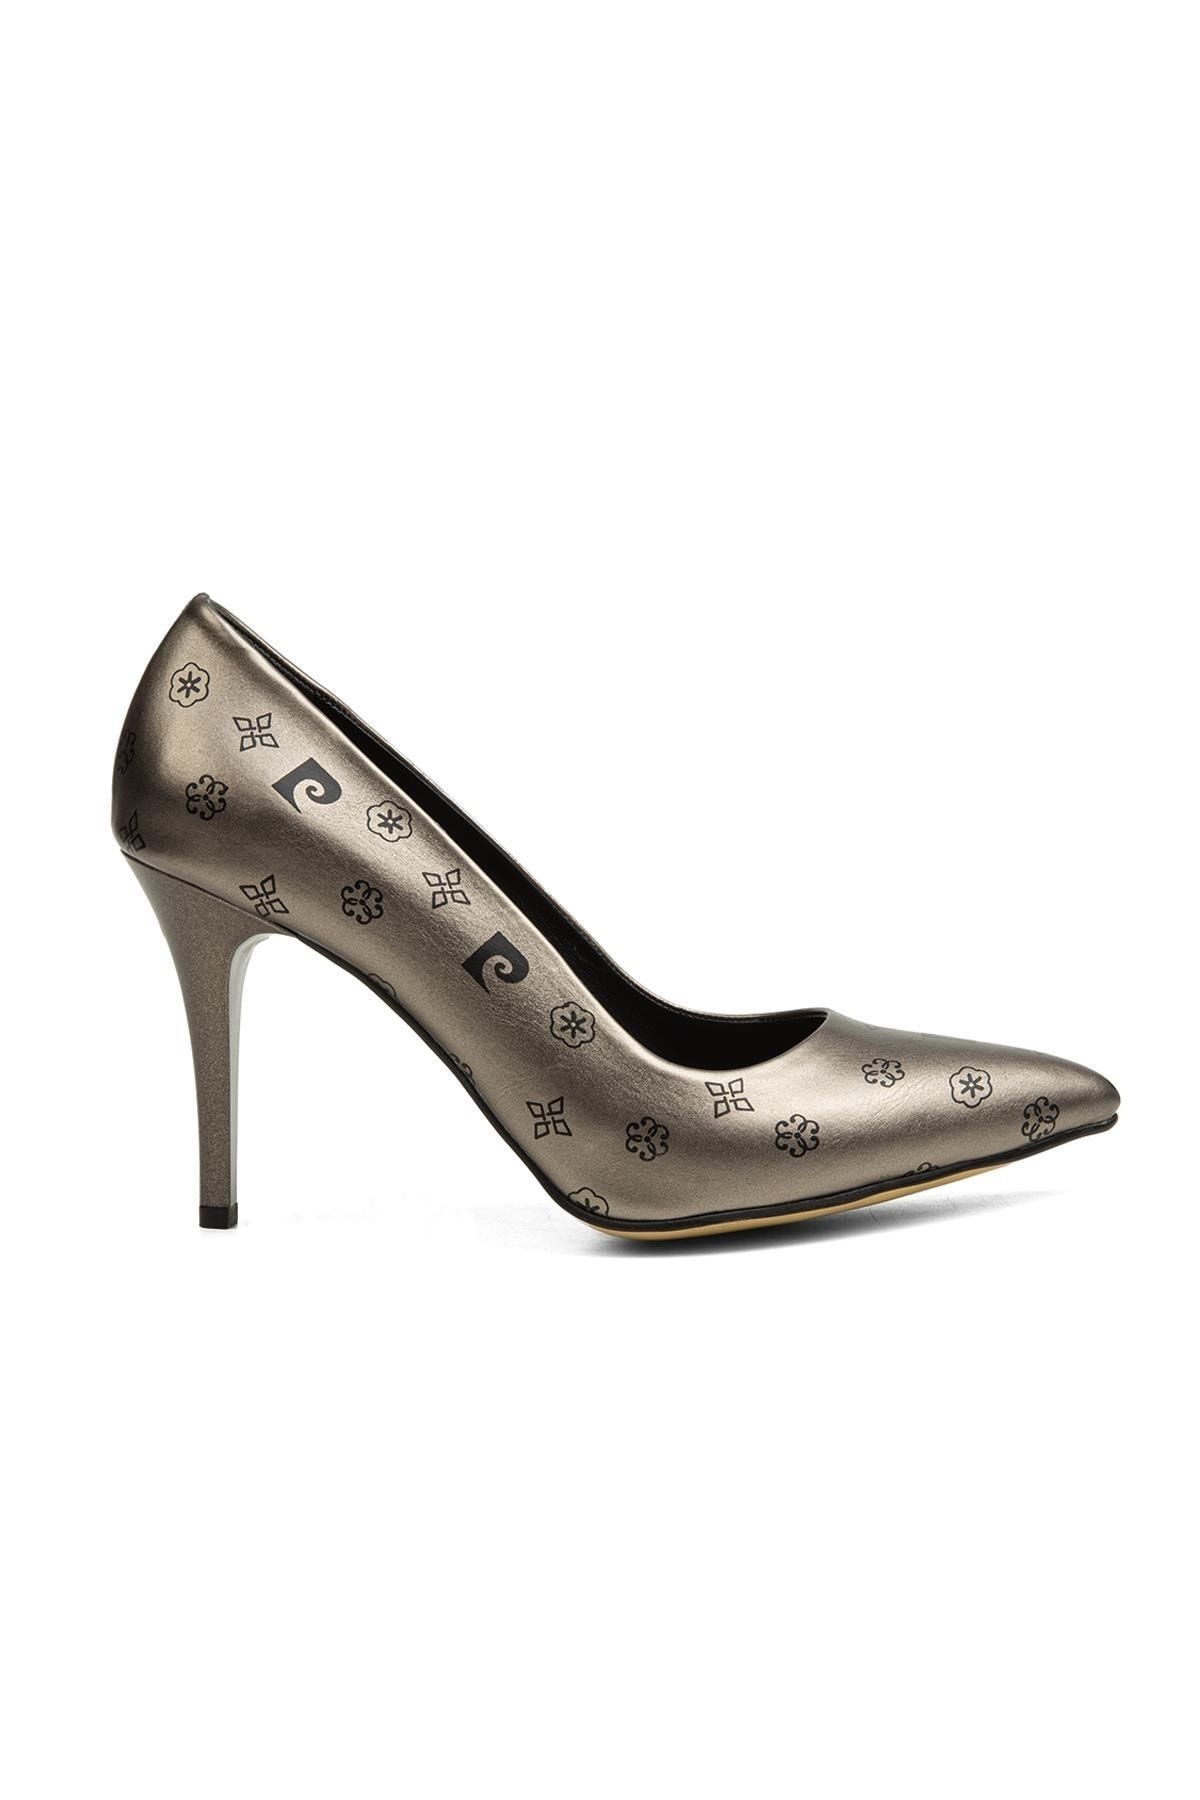 Pierre Cardin ® | Pc-52211-3955 Platin Desen - Kadın Topuklu Ayakkabı